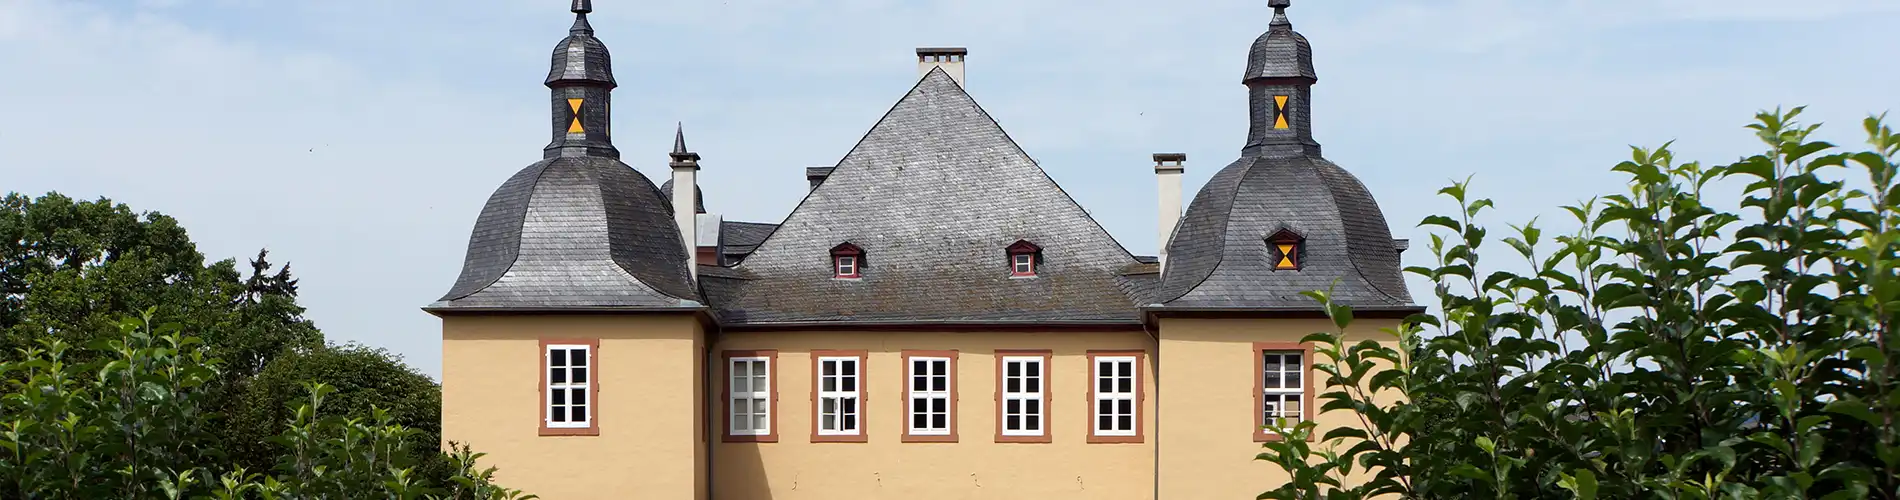 Schloss Eicks | Stadt Mechernich